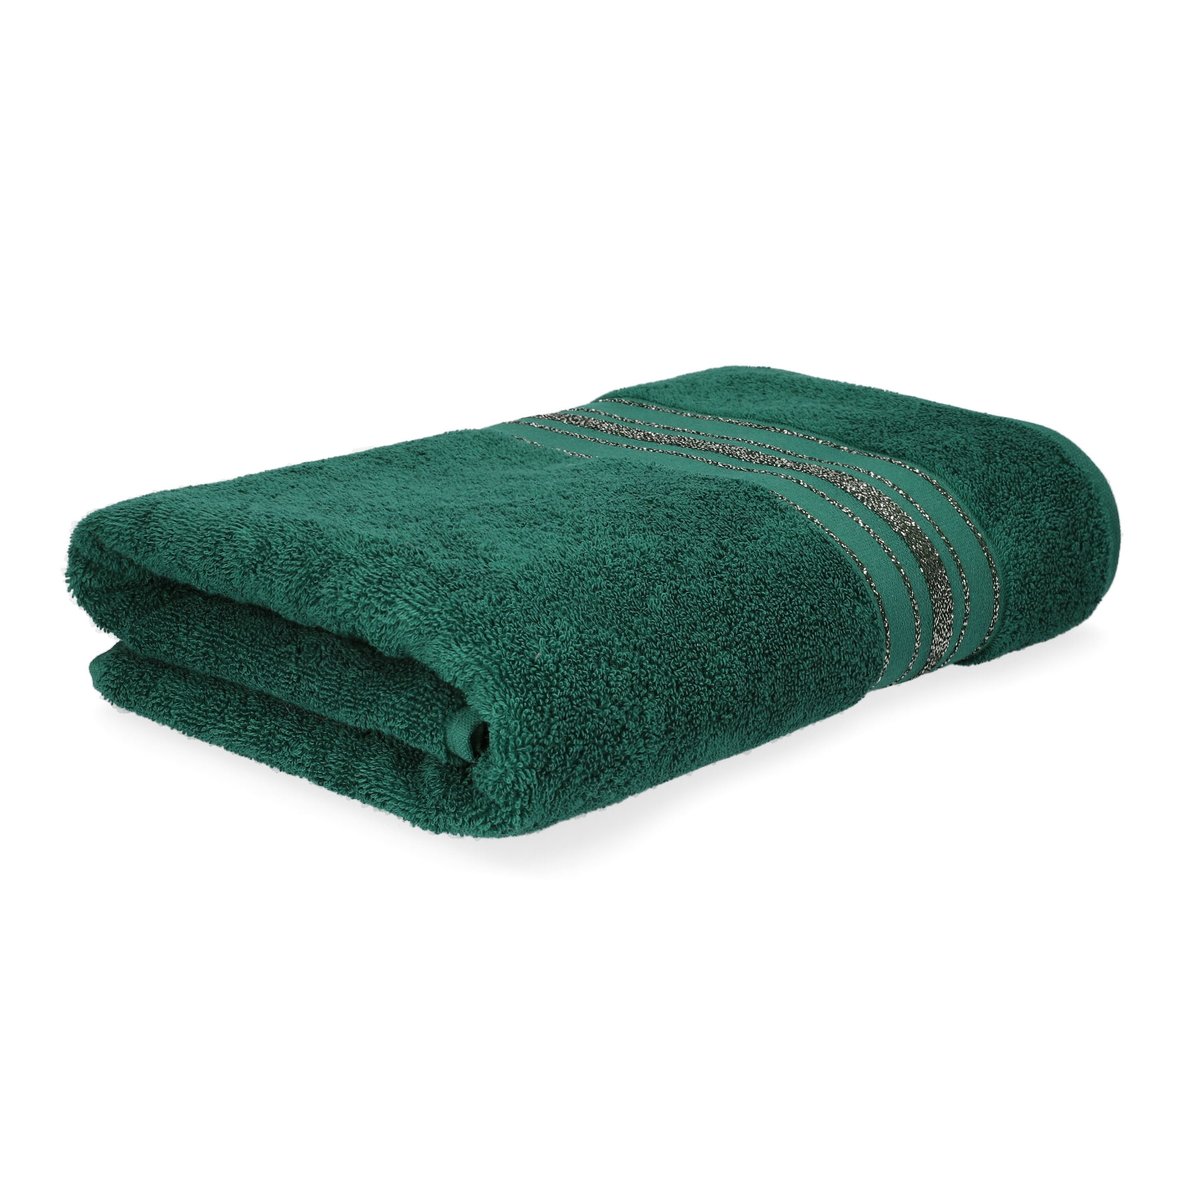 Ręcznik z paskami ŁAZIENKOWY DUKE 50x90 cm HOMLA